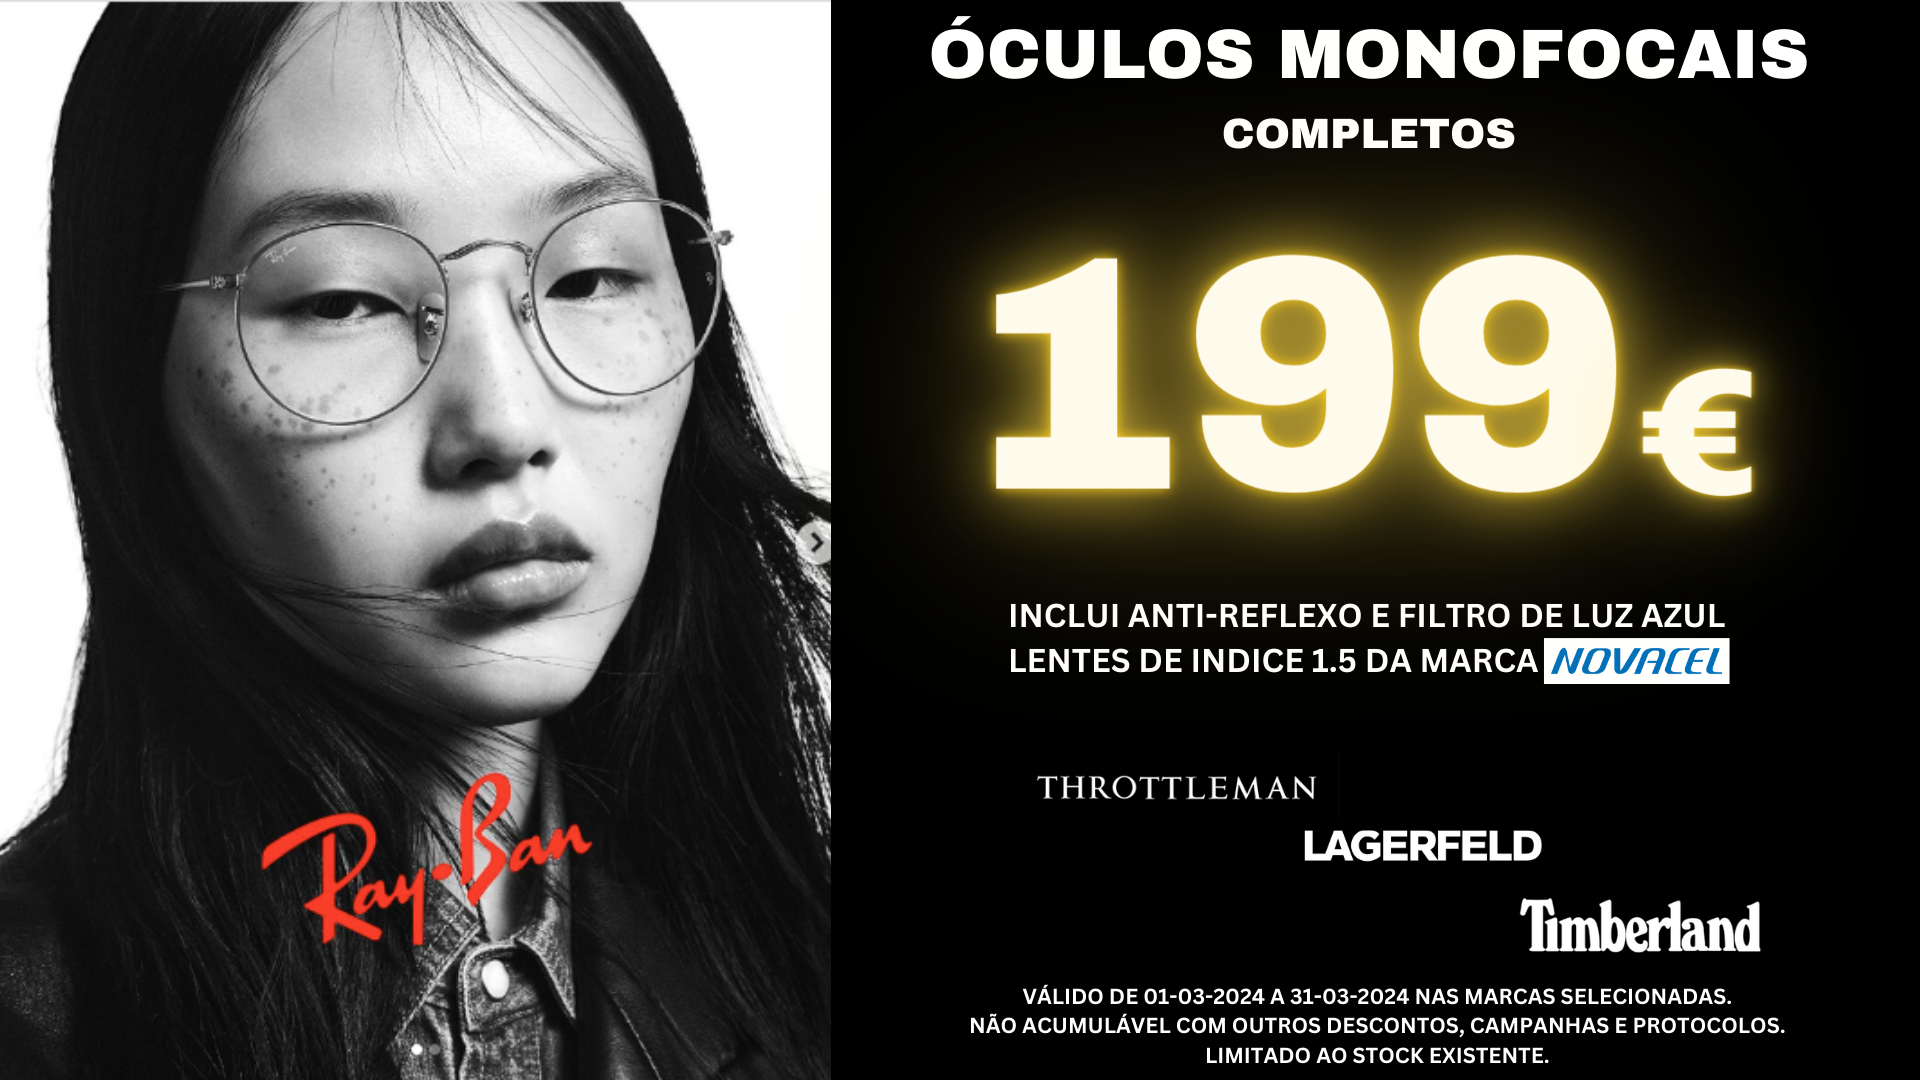 Campanha óculos monofocais Ray-Ban 199€